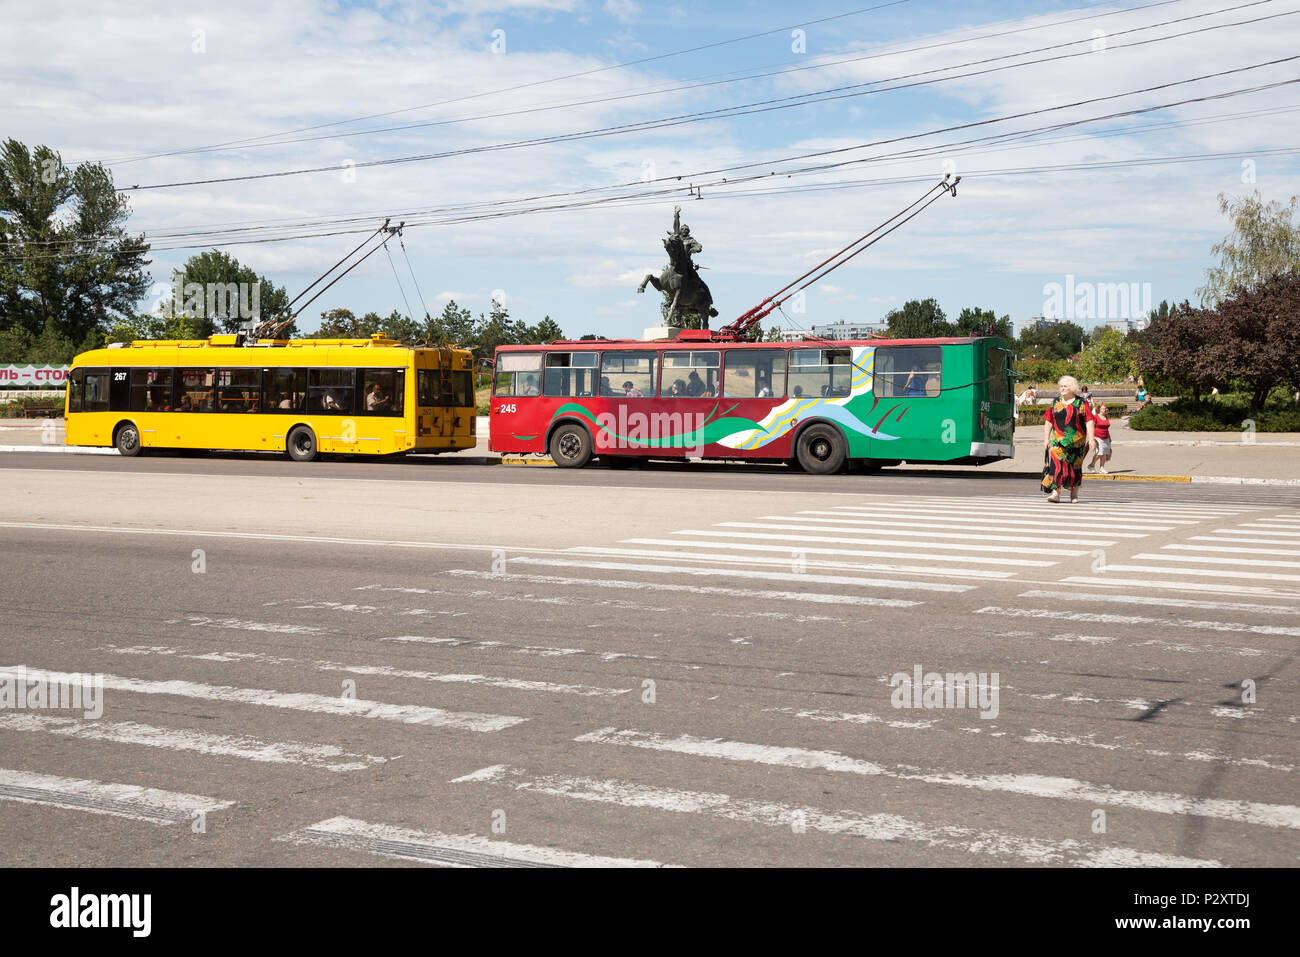 25.08.2016, Tiraspol, la Transnistrie, la Moldavie - Trolleybus, un rouge-vert couleurs transnistrien, dame plus âgée dans color matching dress traverse Zebr Banque D'Images